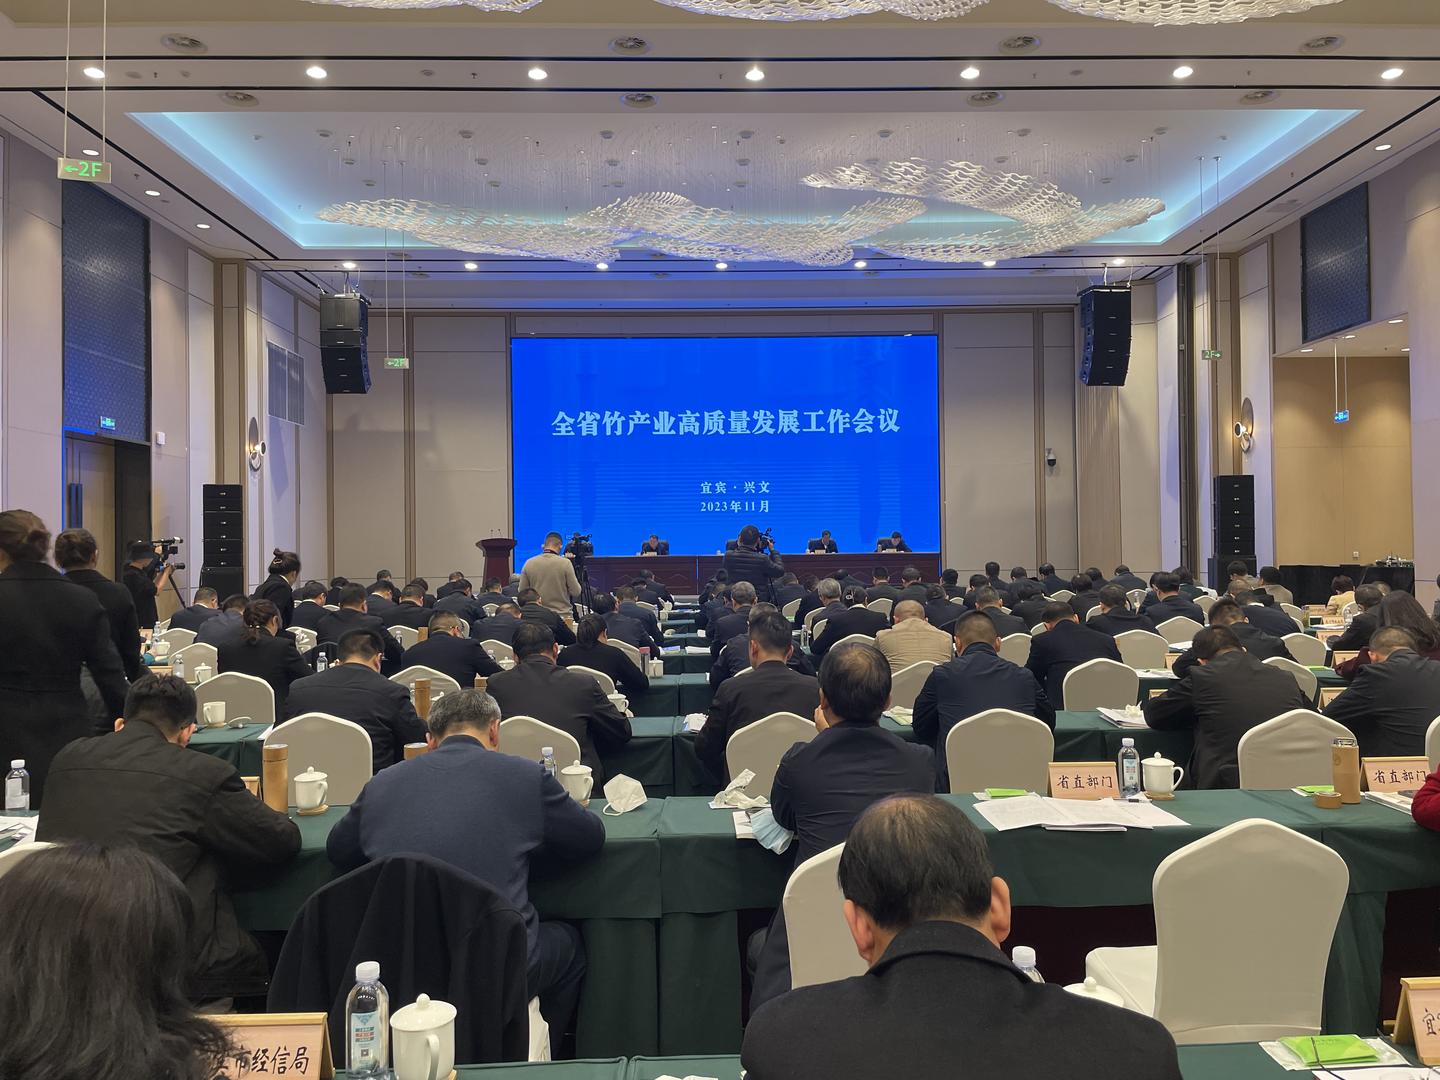 天津自贸区成立新型离岸贸易产业联盟 促进新兴贸易业态发展